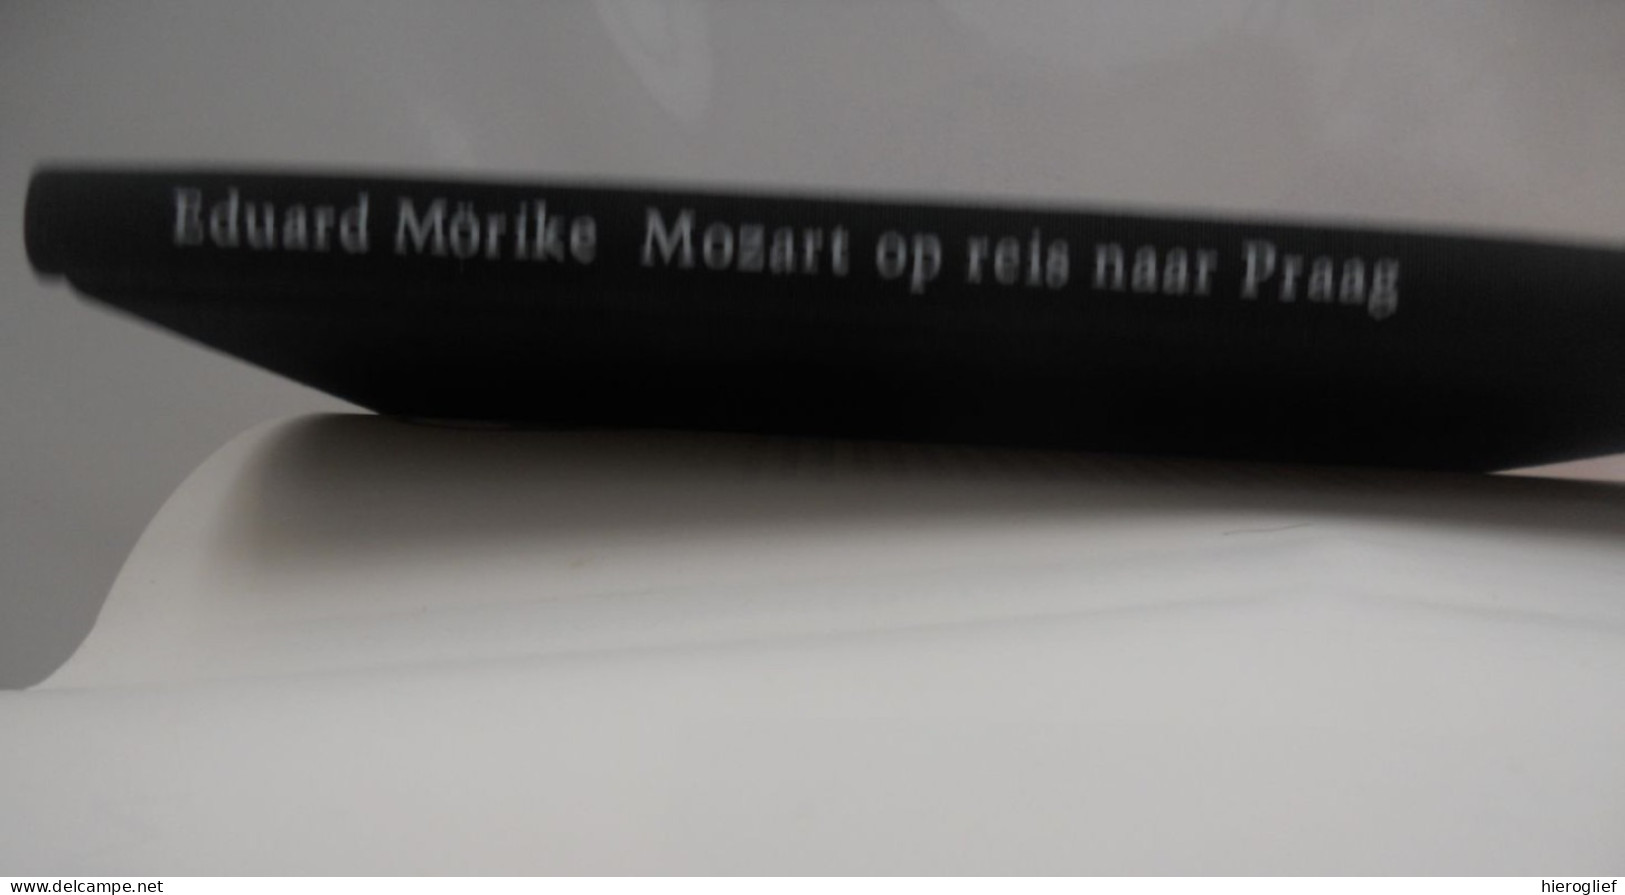 Mozart Op Reis Naar Praag Door Eduard Mörike Vertaling Wilfred Oranje - Kids